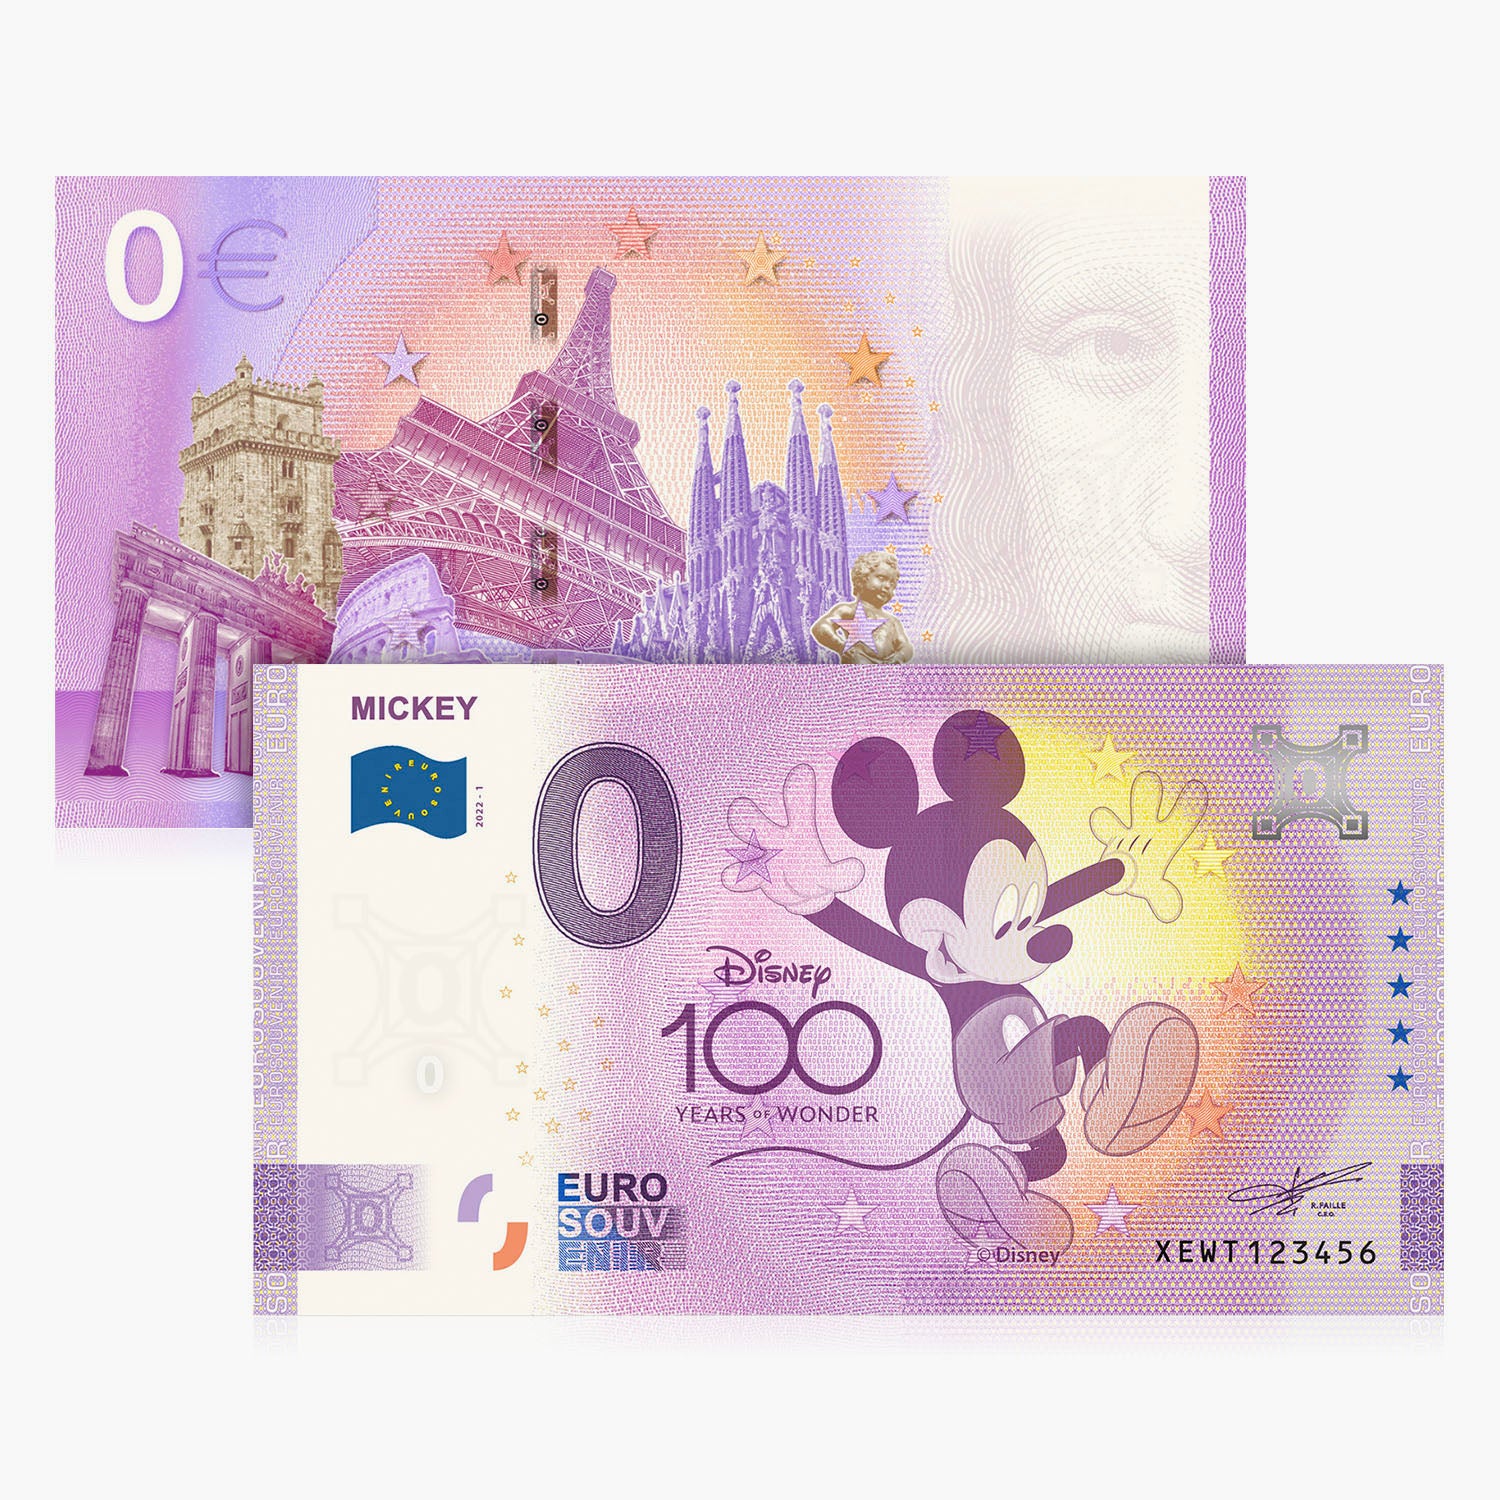 ディズニー100周年記念0ユーロ紙幣コレクション